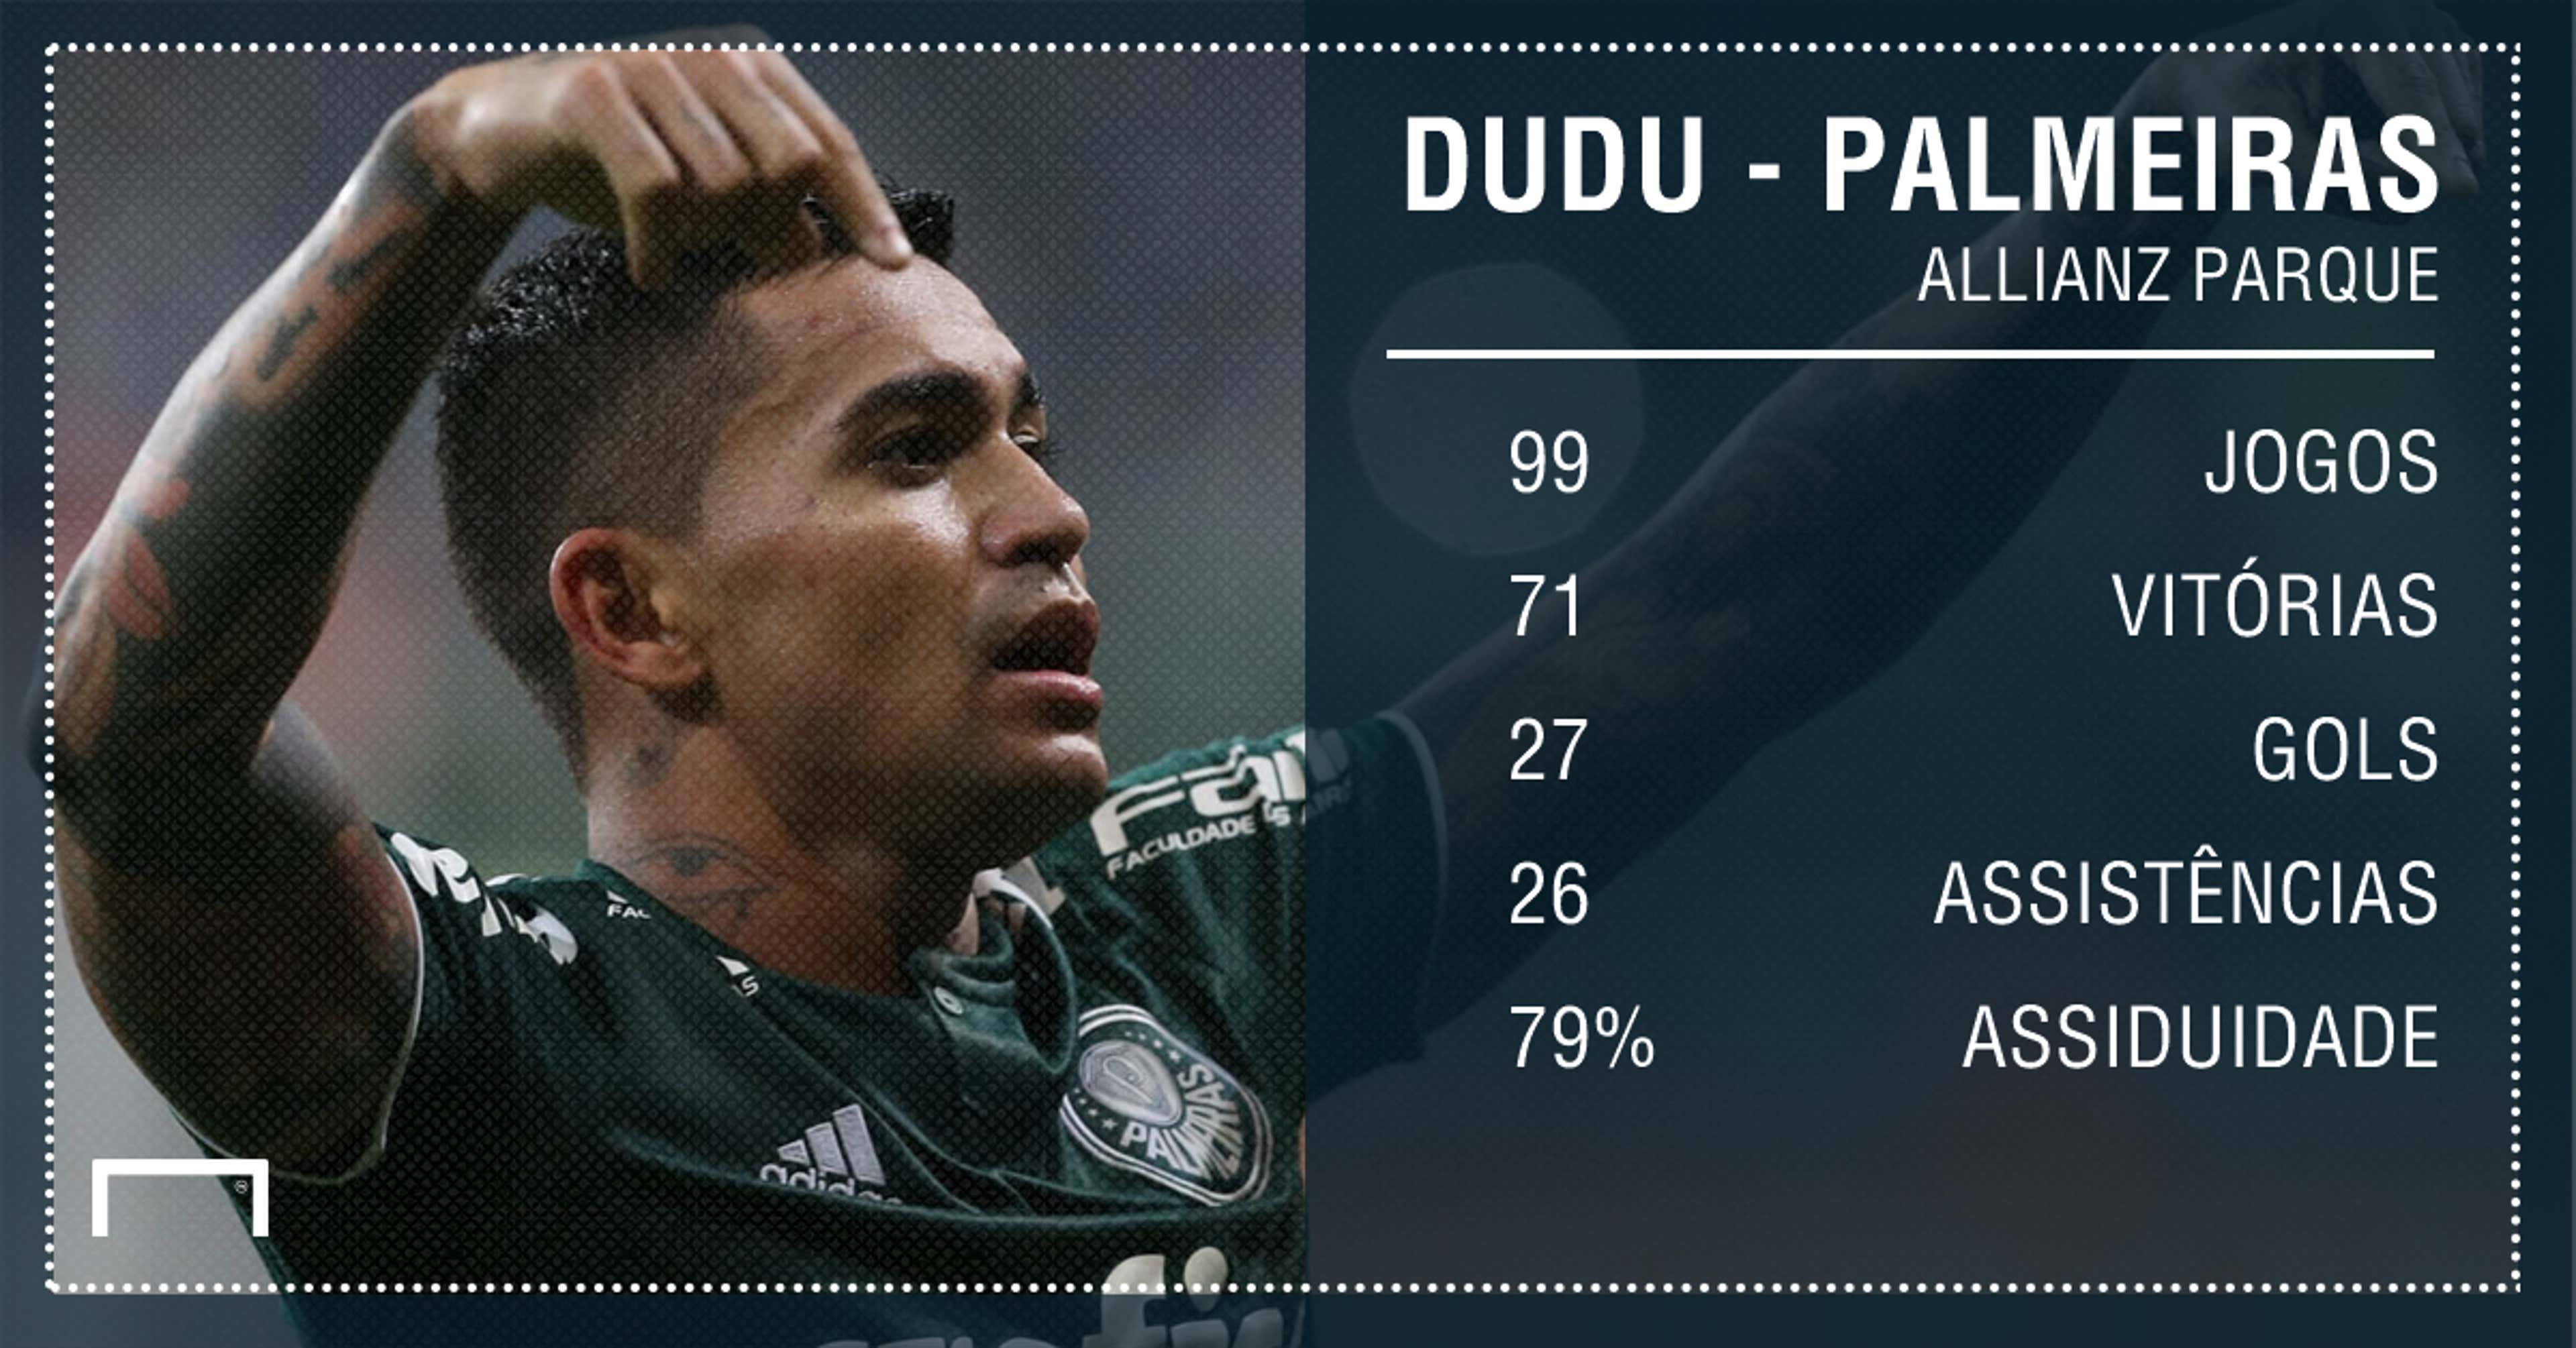 Dudu PS - Palmeiras - 23/01/2019